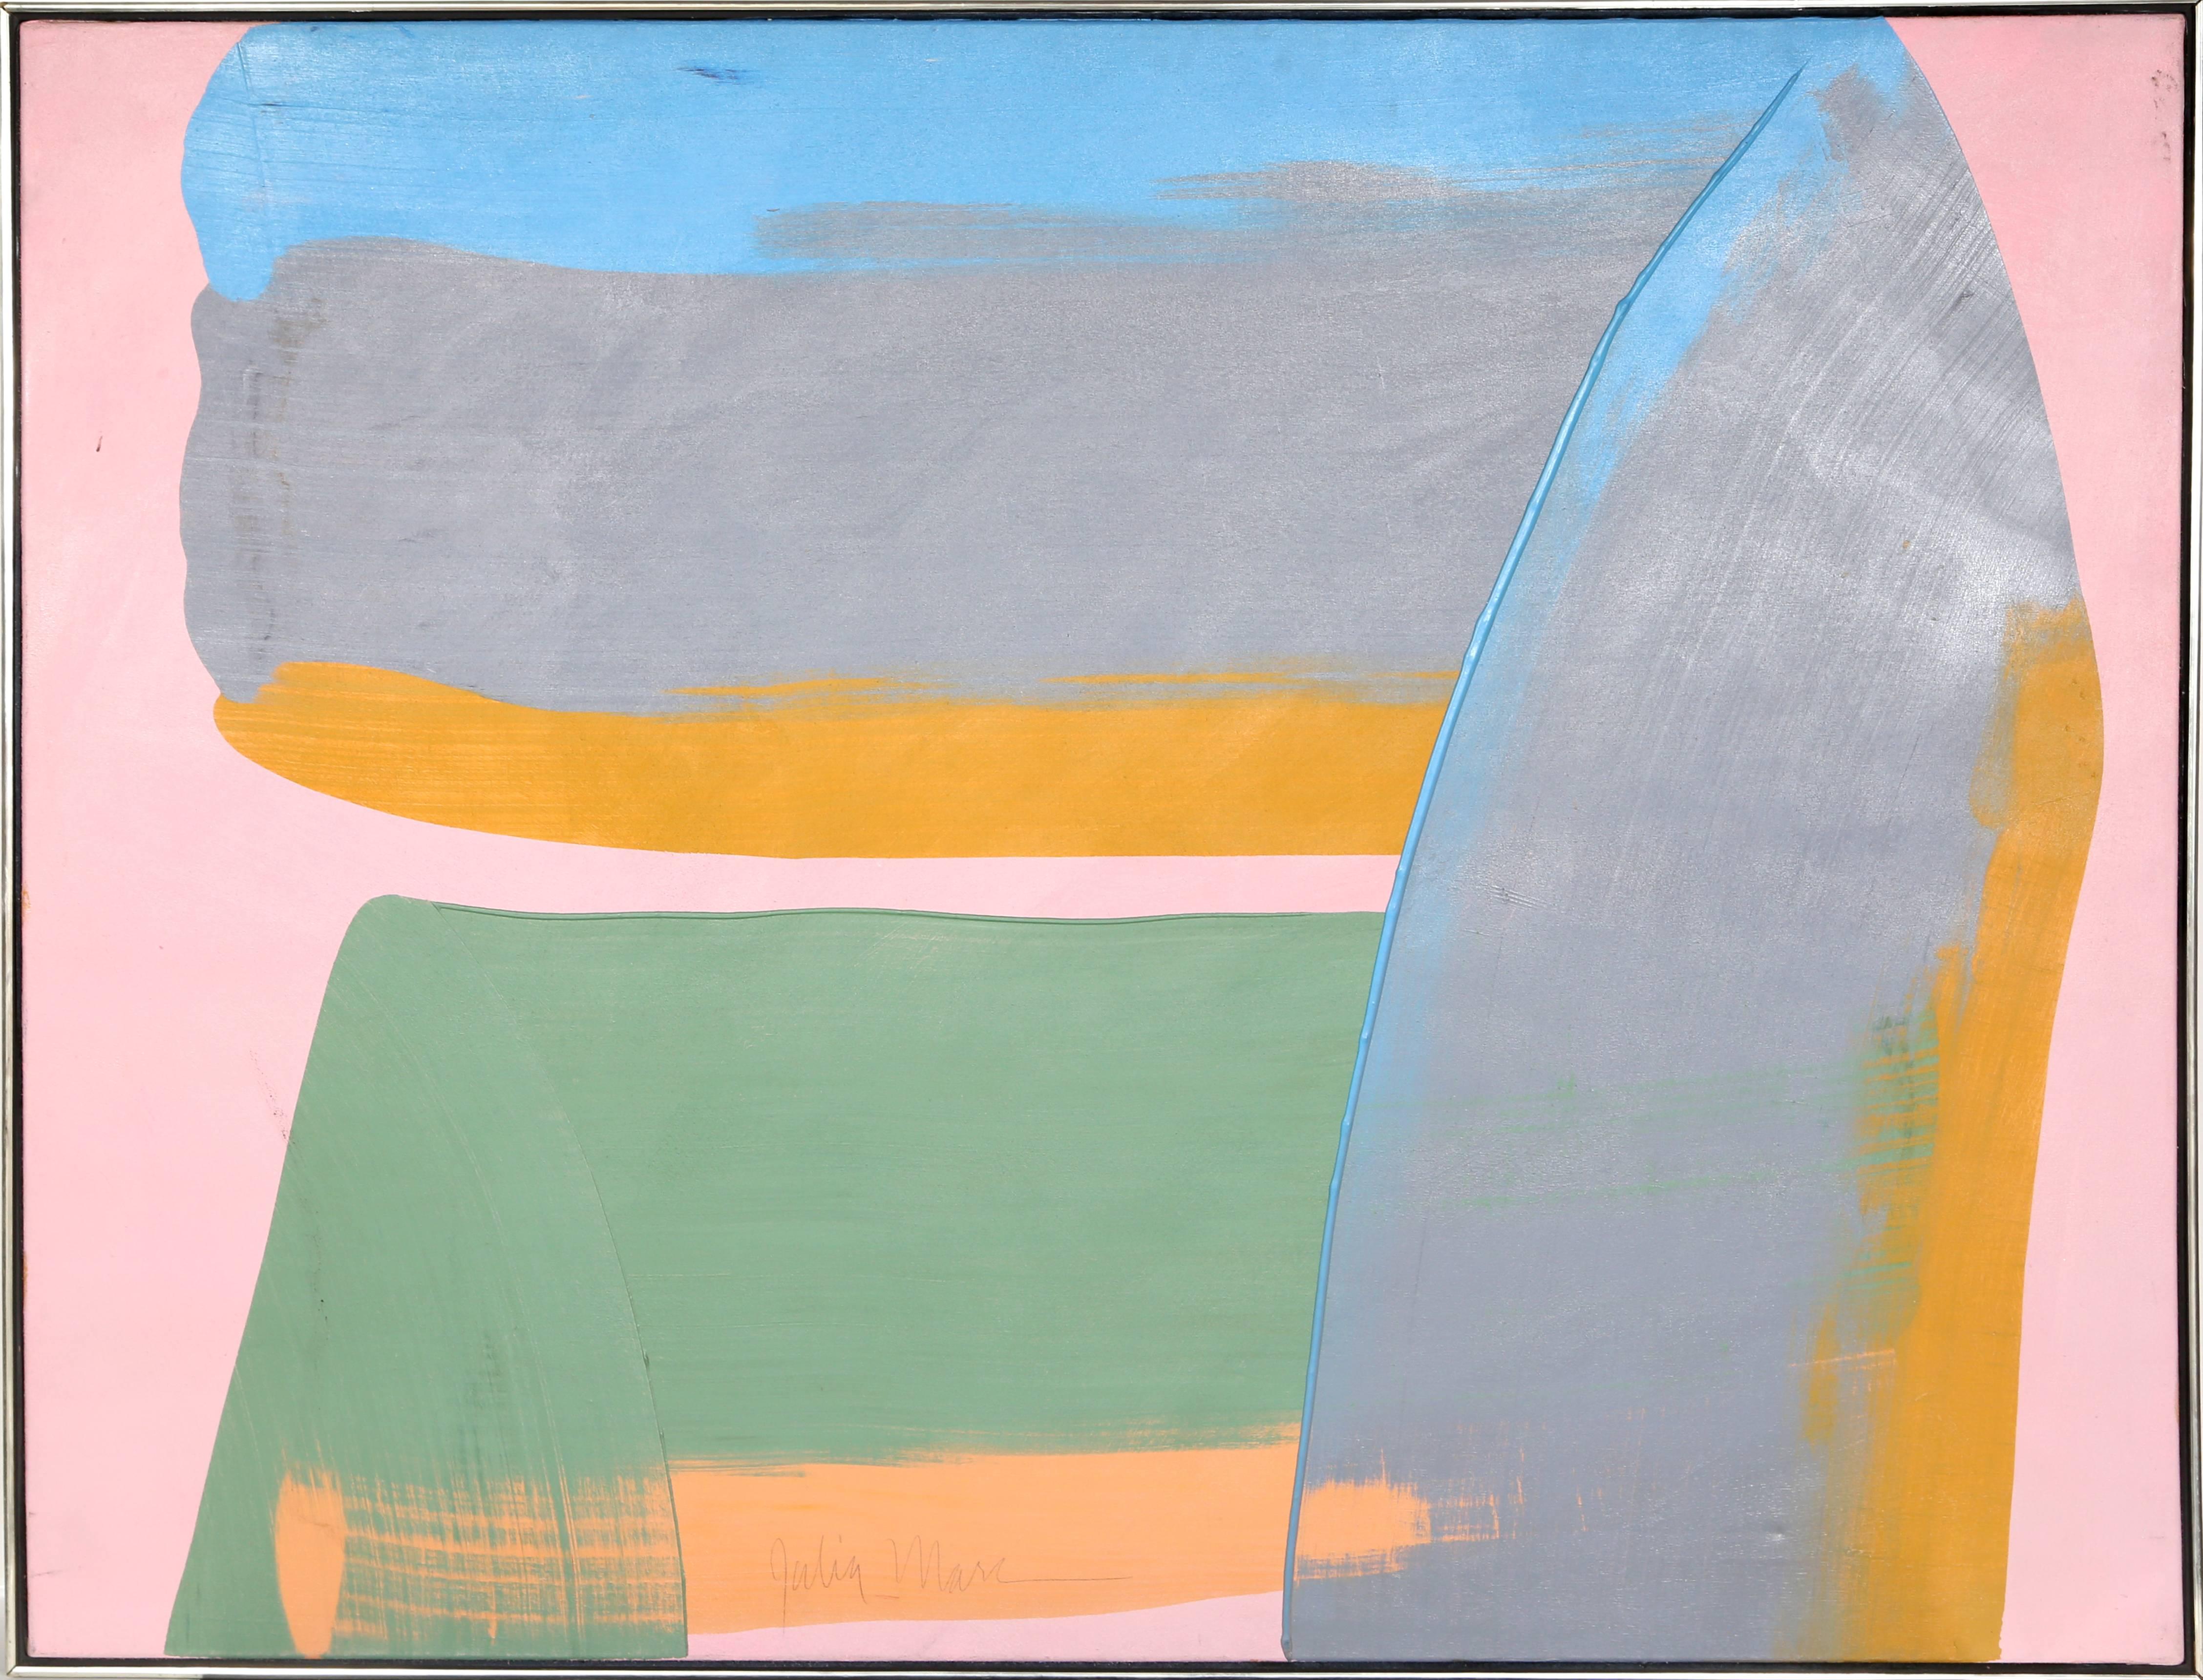 Artiste : Julia Marc
Titre : Bolder Strokes 7
Année : vers 1980
Moyen : Acrylique sur toile, signé à droite.
Taille : 48 x 60 in. (121,92 x 152,4 cm)
Taille du cadre : 49 x 61 pouces